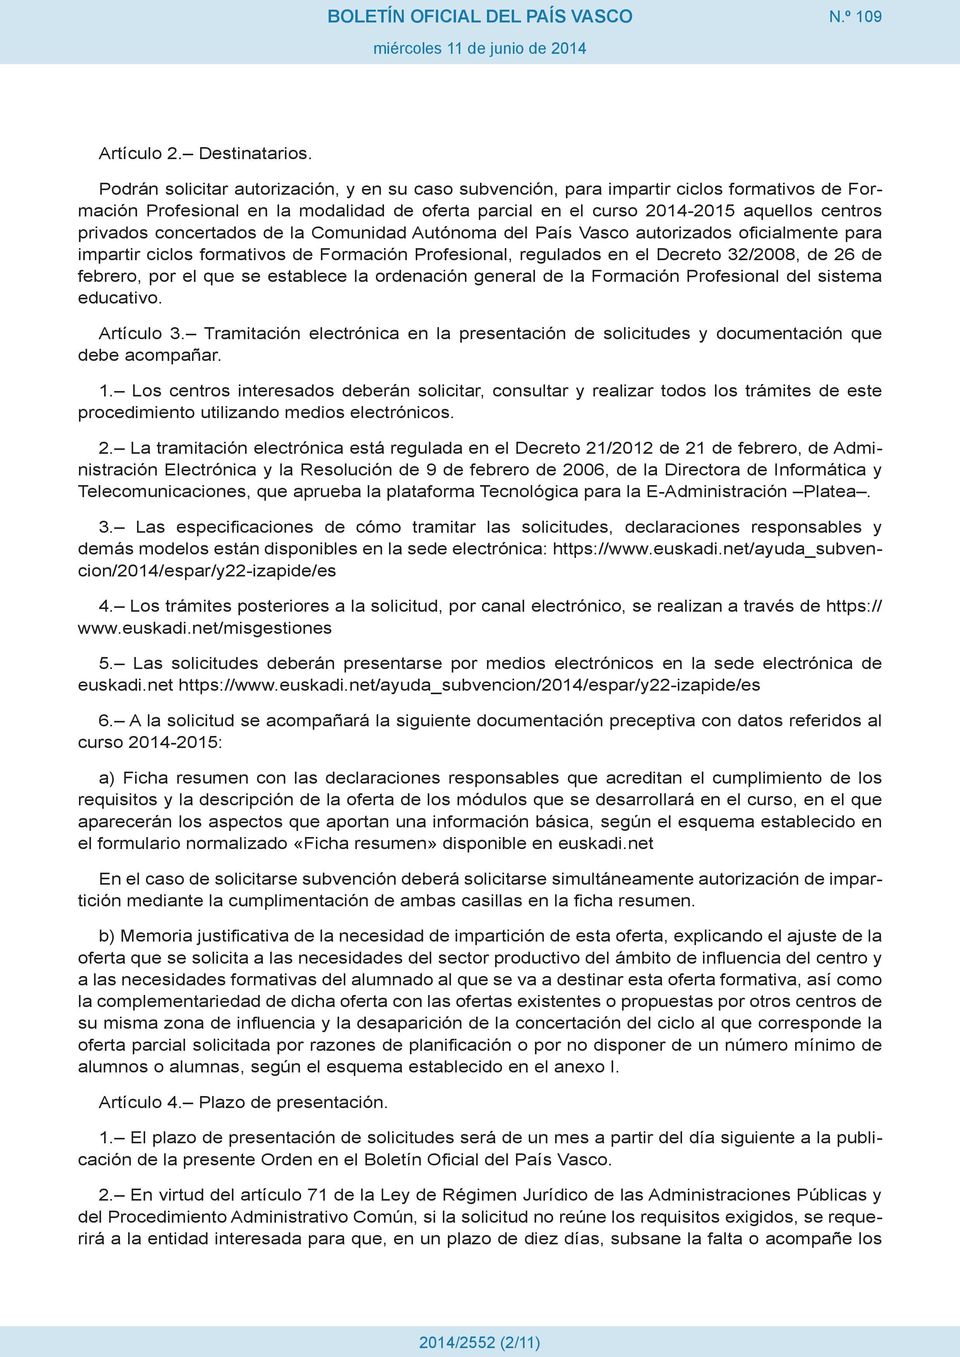 concertados de la Comunidad Autónoma del País Vasco autorizados oficialmente para impartir ciclos formativos de Formación Profesional, regulados en el Decreto 32/2008, de 26 de febrero, por el que se